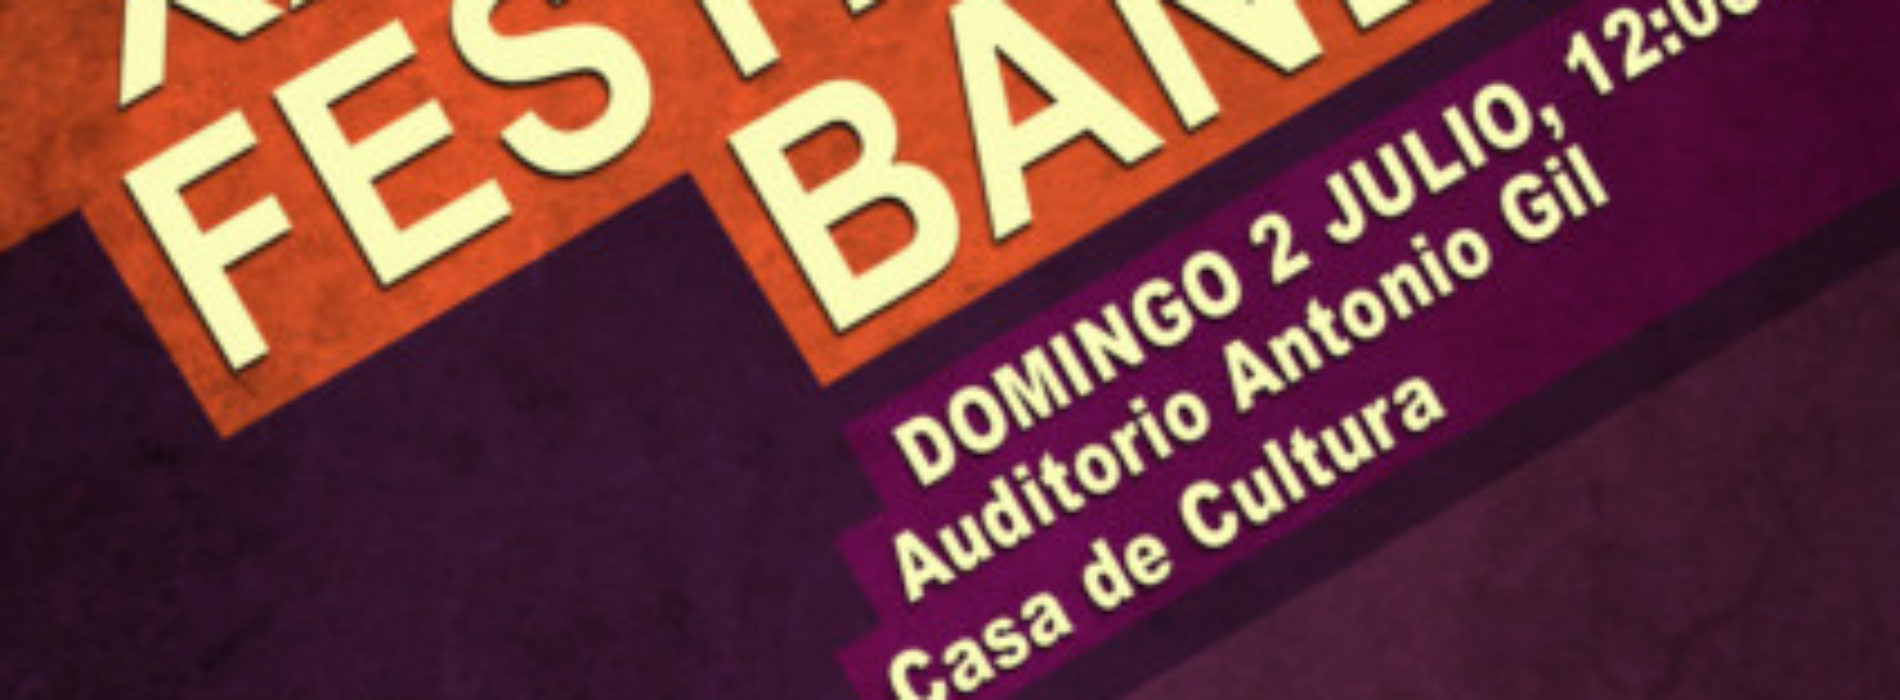 La Paz realiza el Festival de Bandas el próximo domingo 2 a las 12h.